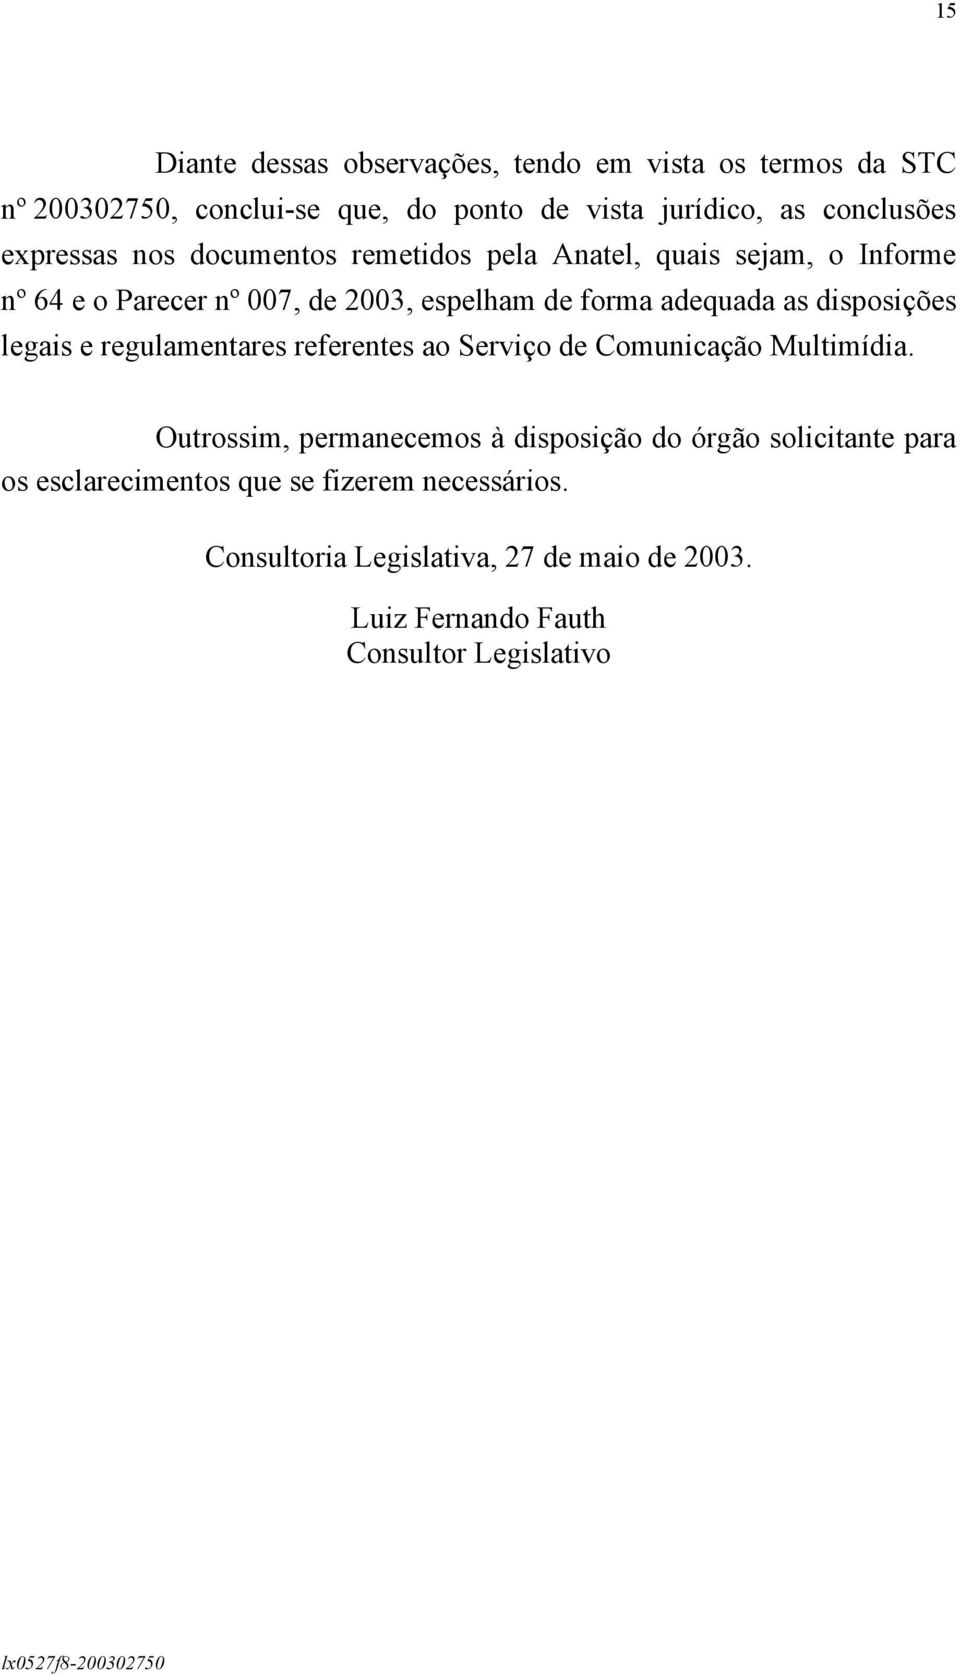 disposições legais e regulamentares referentes ao Serviço de Comunicação Multimídia.